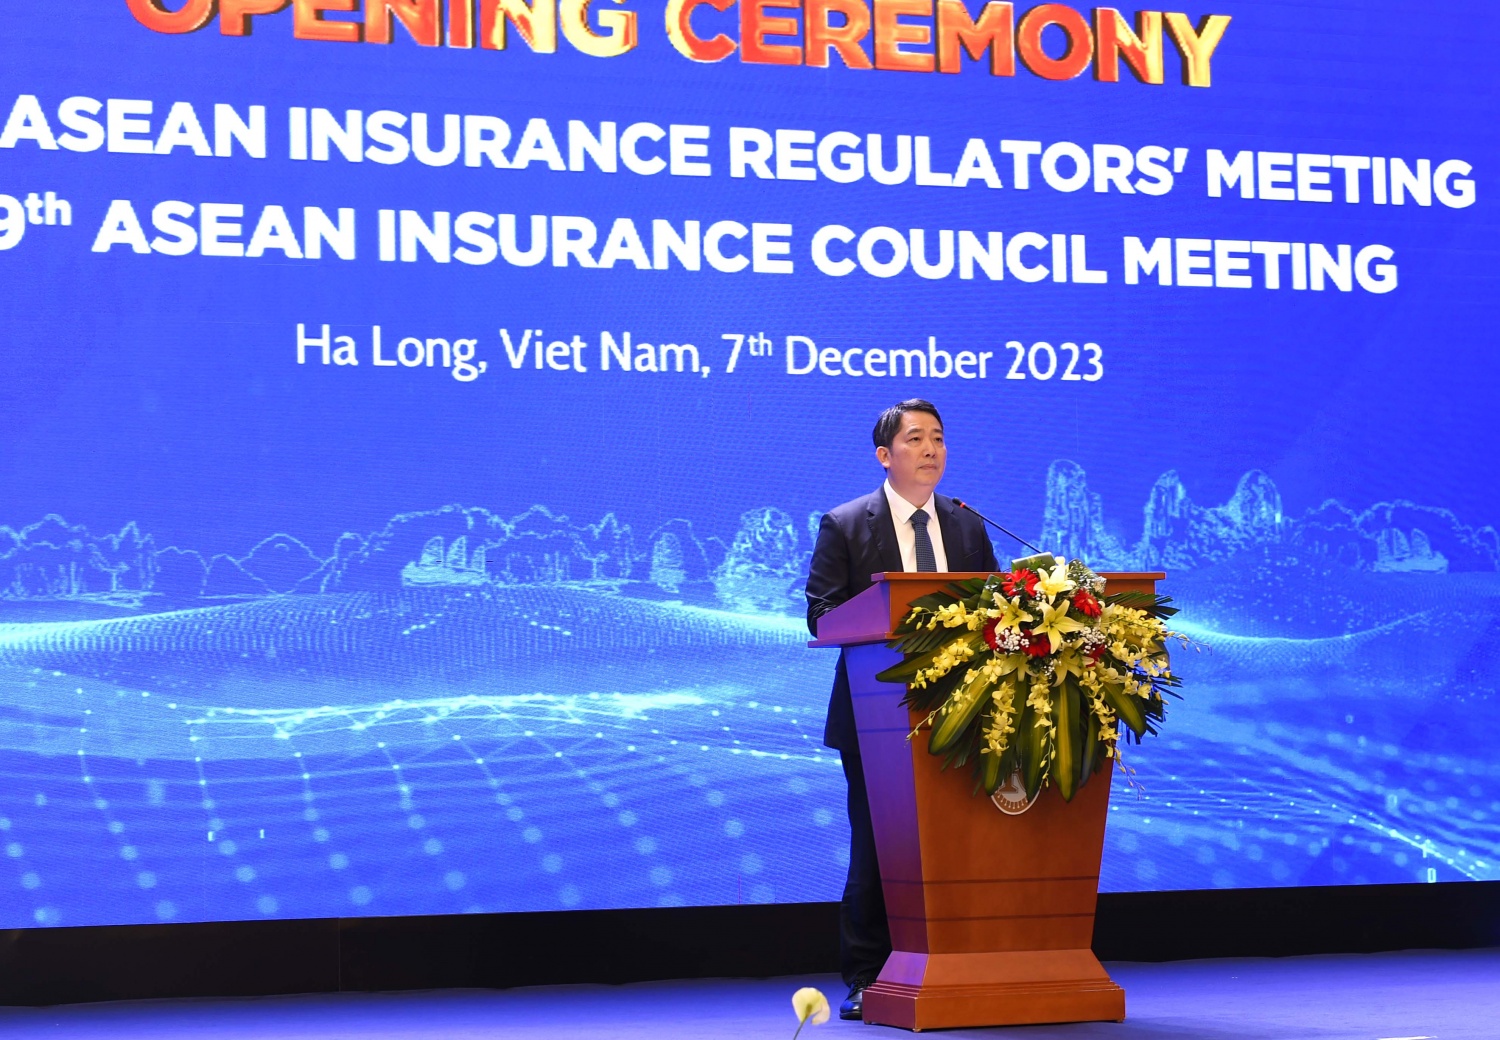 Khai mạc Hội nghị Các cơ quan quản lý bảo hiểm ASEAN lần thứ 26 và Hội nghị Hội đồng bảo hiểm ASEAN lần thứ 49